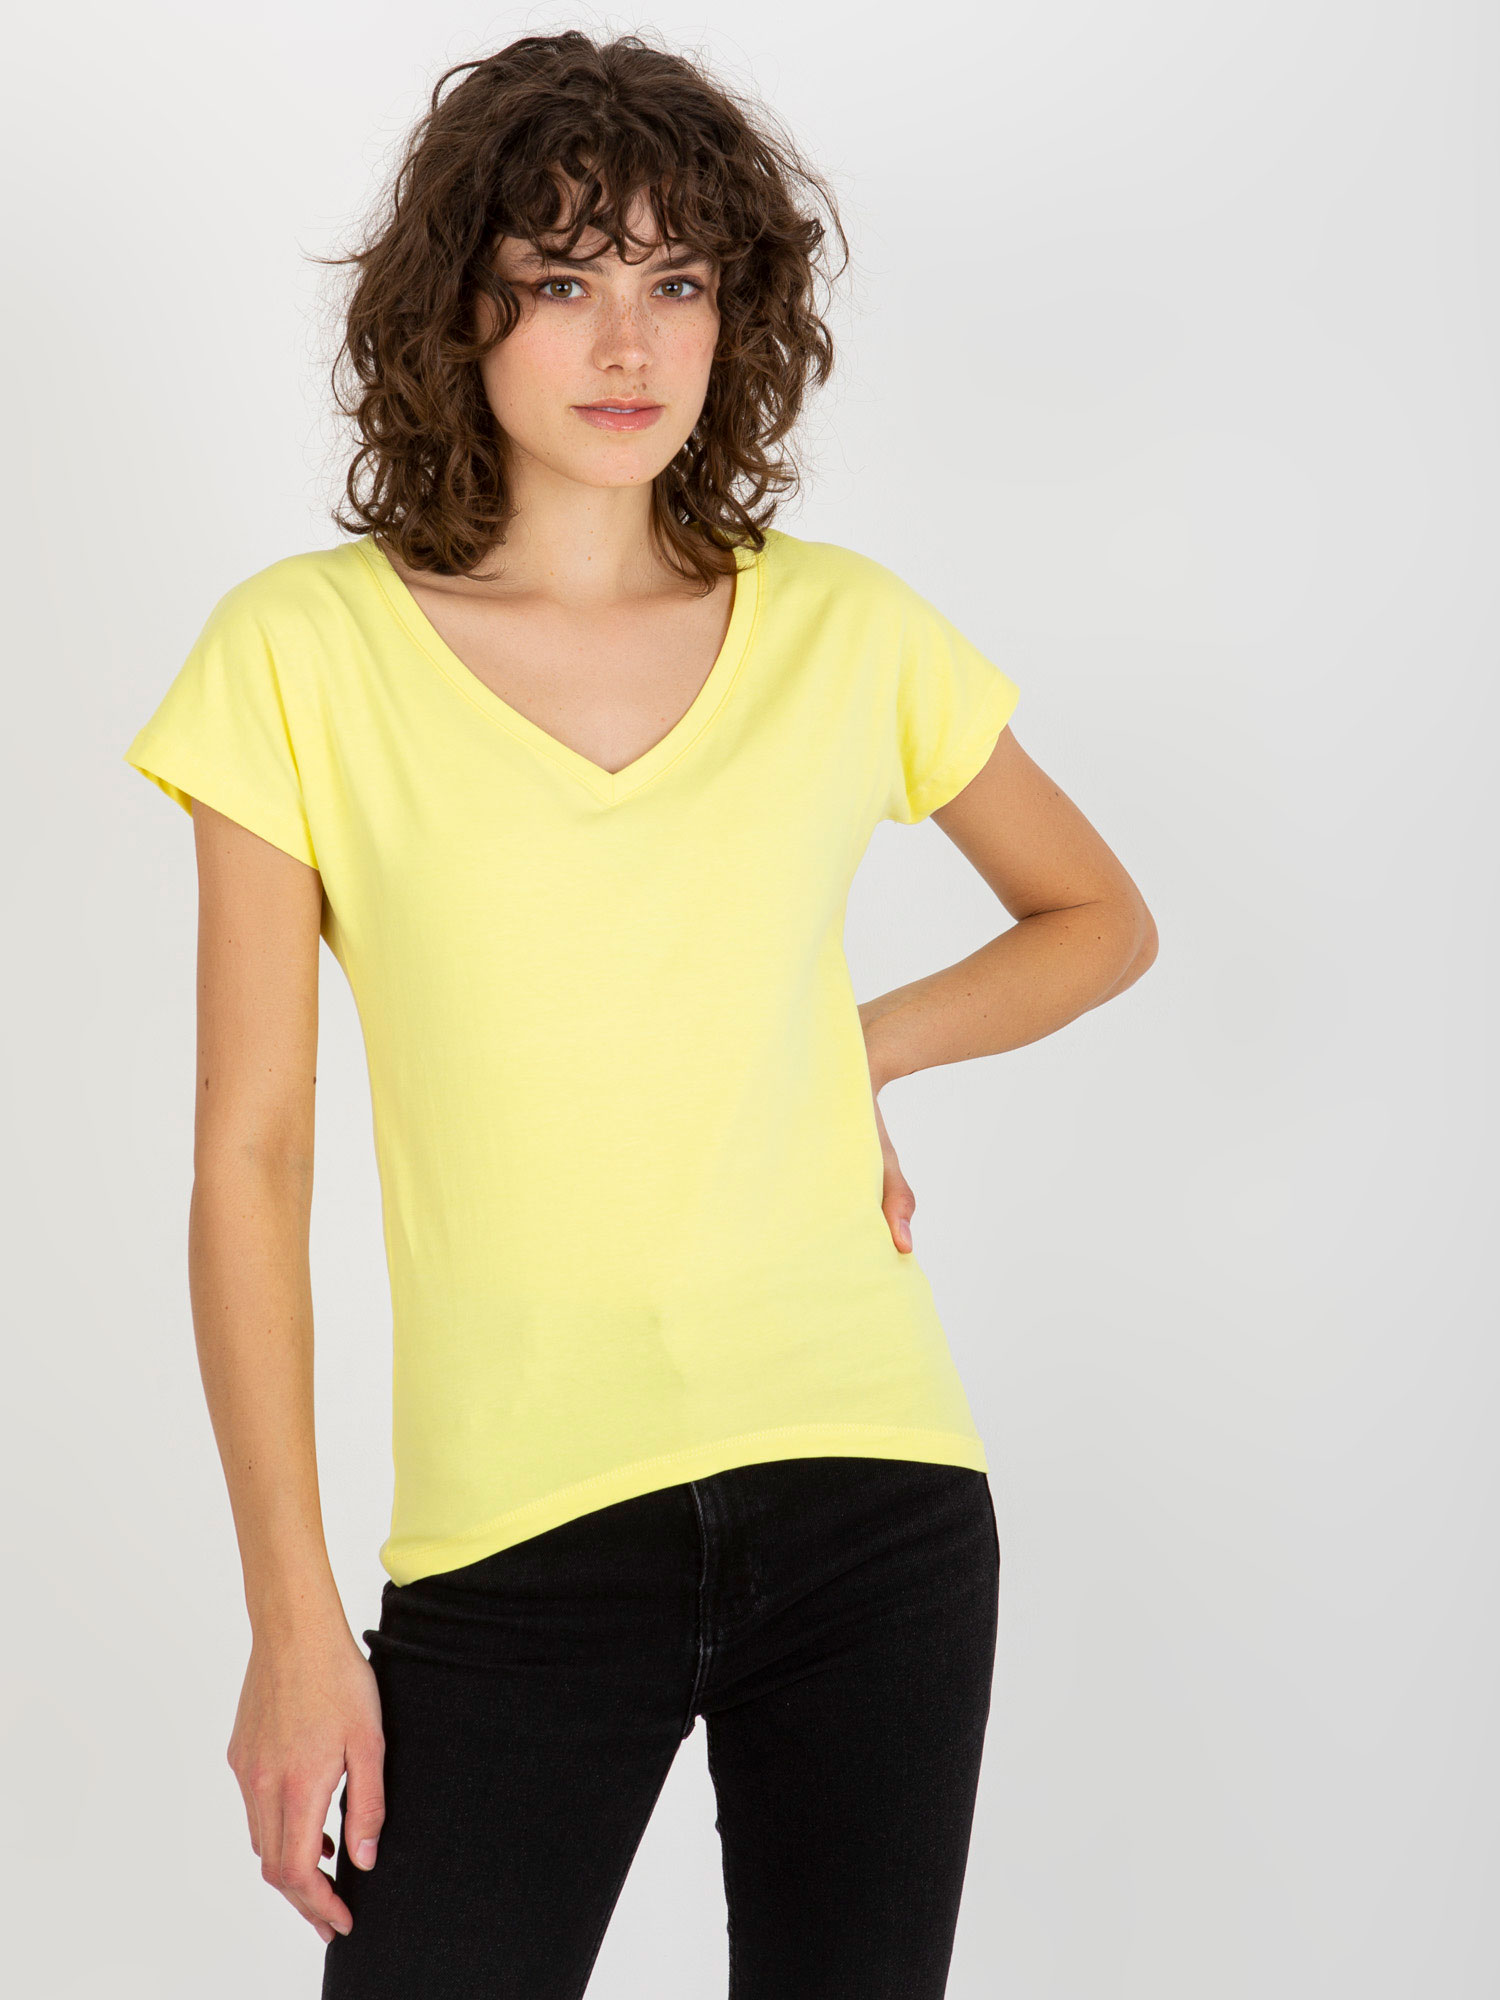 Světle žluté dámské tričko s výstřihem VI-TS-035.01P-light yellow Velikost: XL